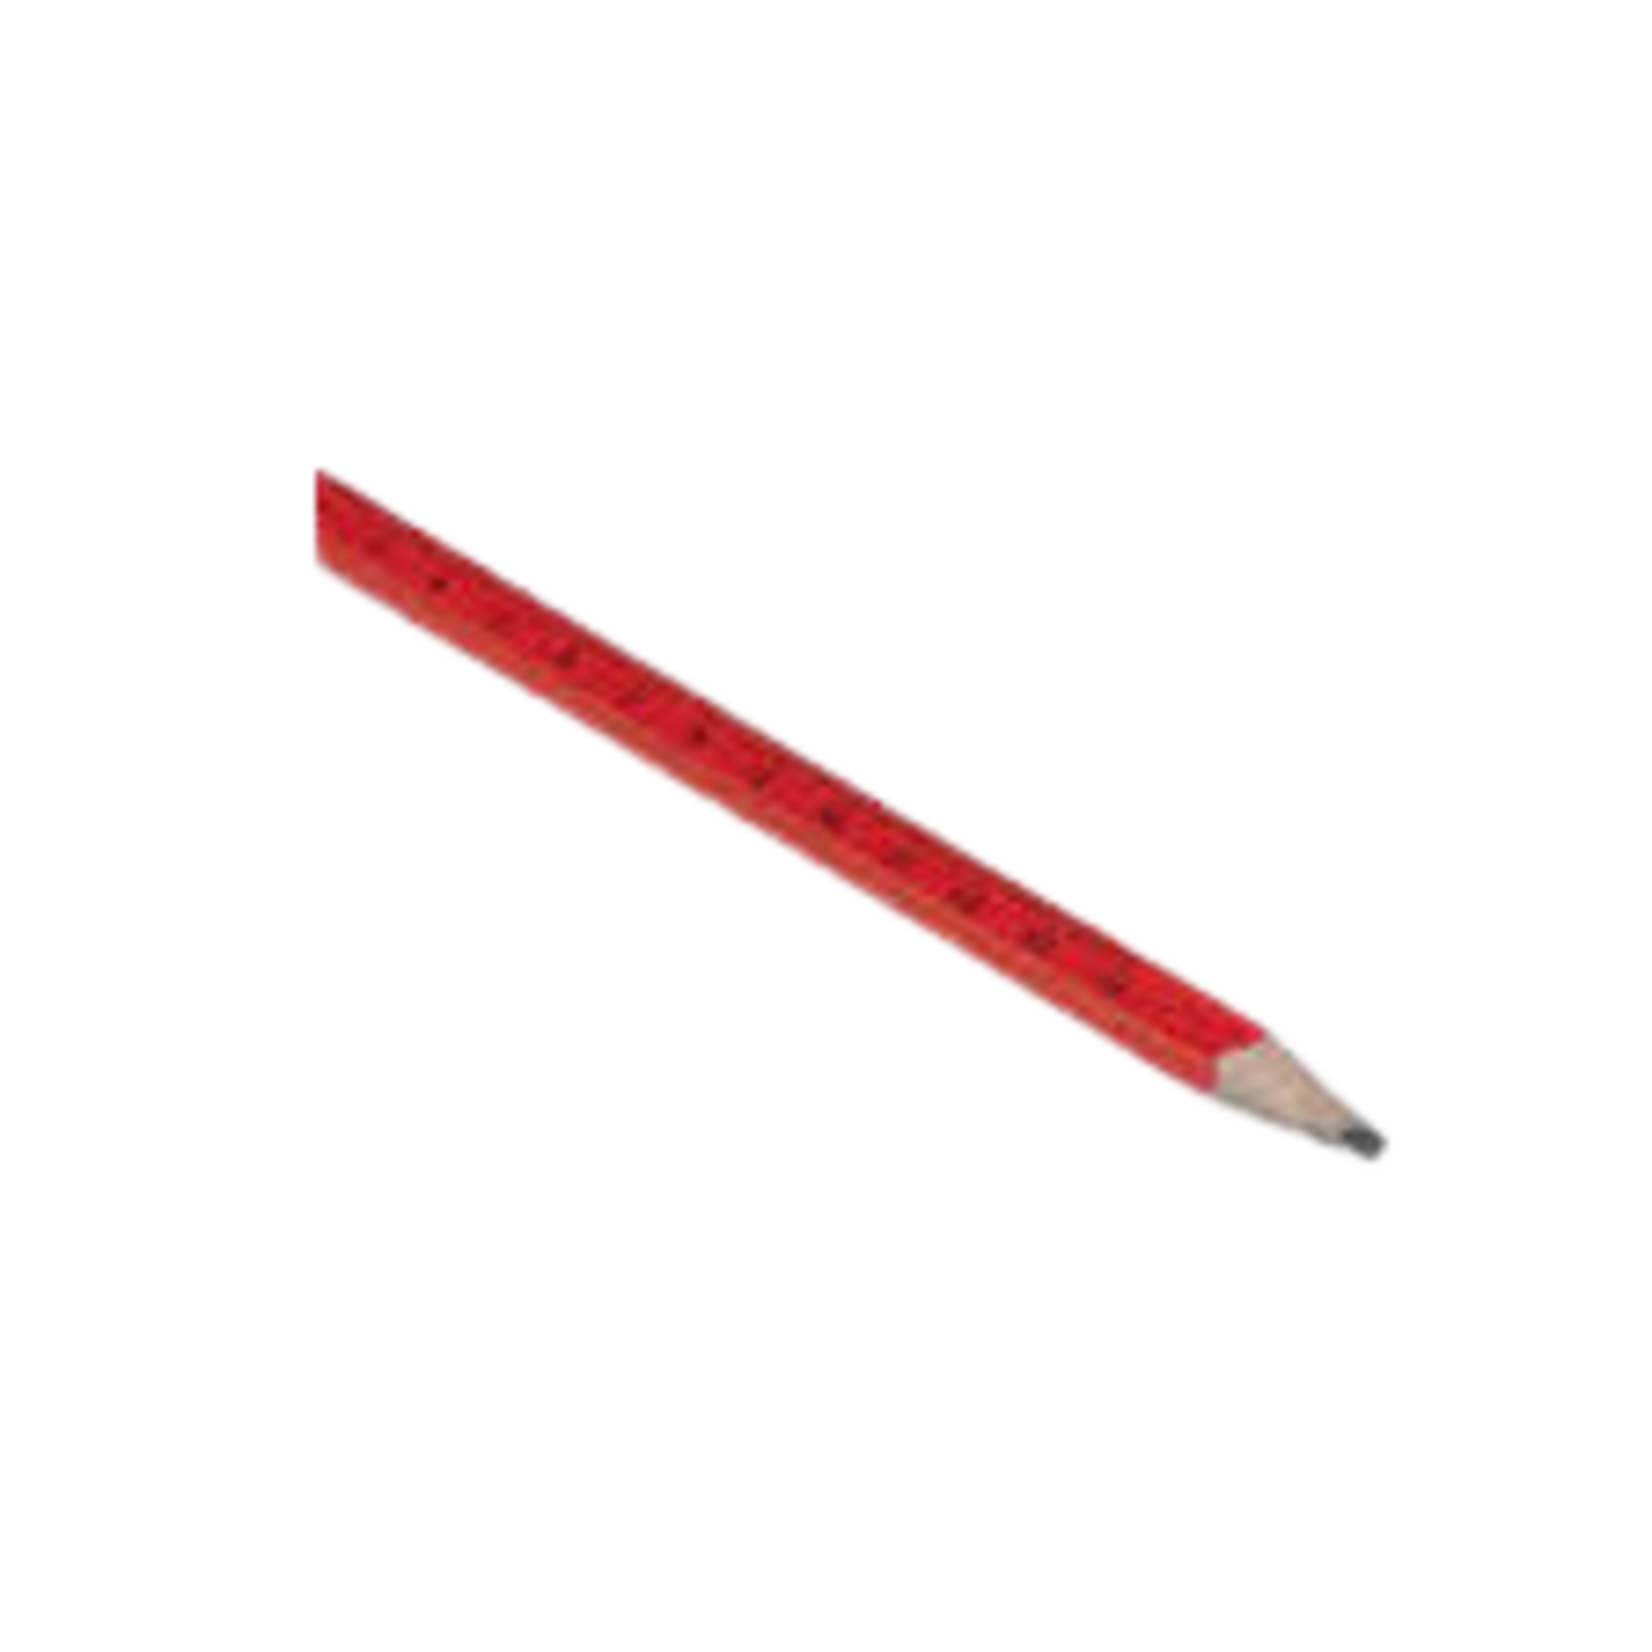 RED CARPENTER PENCIL (MEDIUM)